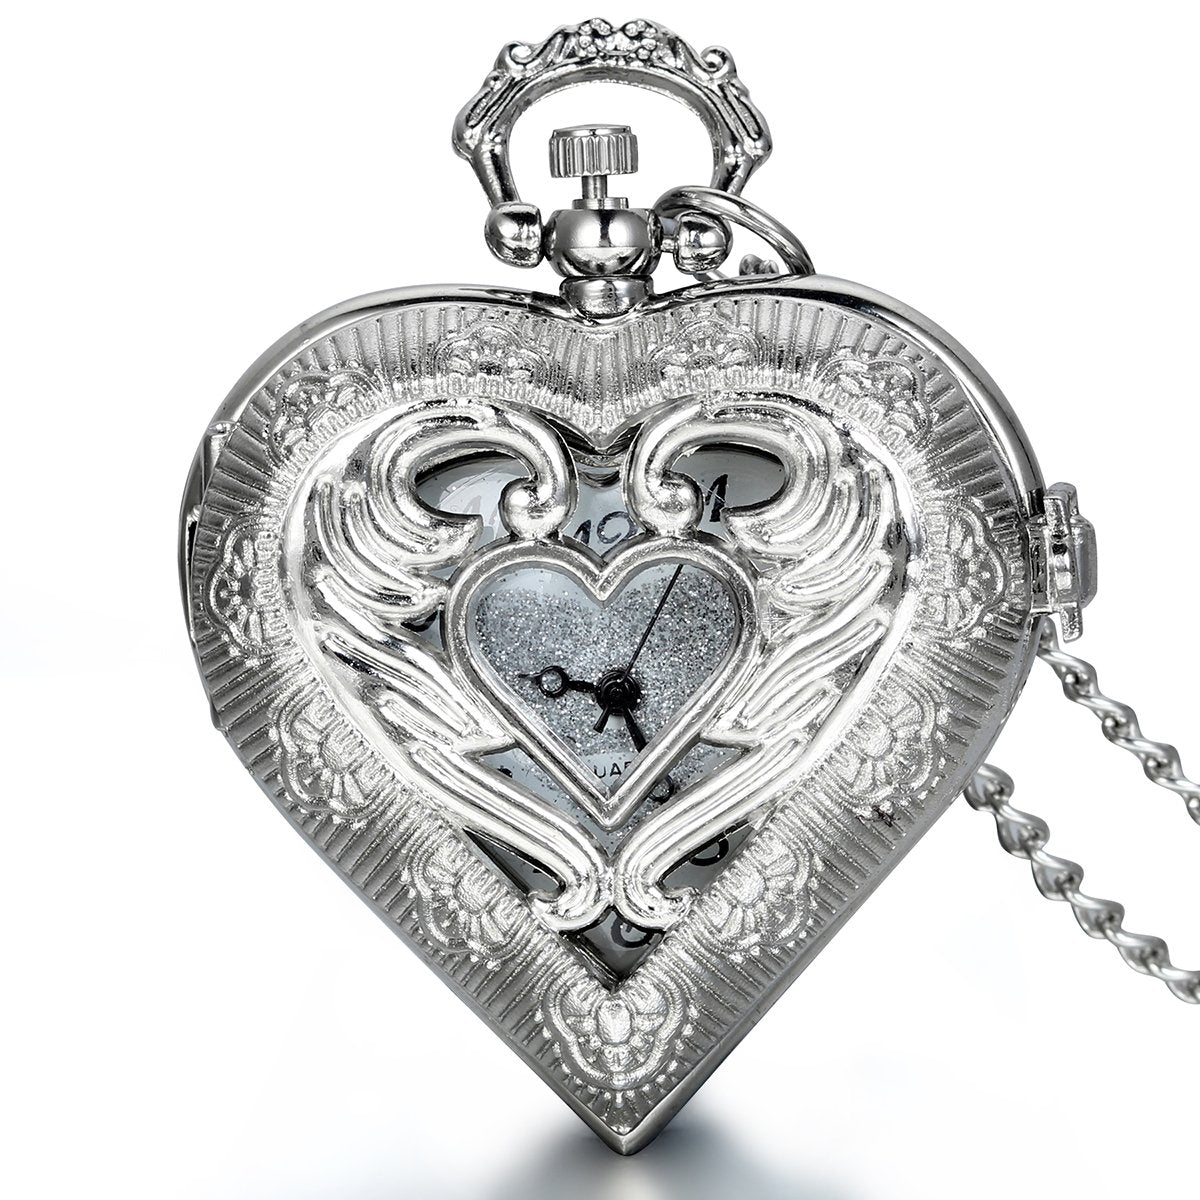 JewelryWe Vintage Pocket Watch,Heart Locket Style Pendant Pocket Watch Necklace for Girls Lady Women